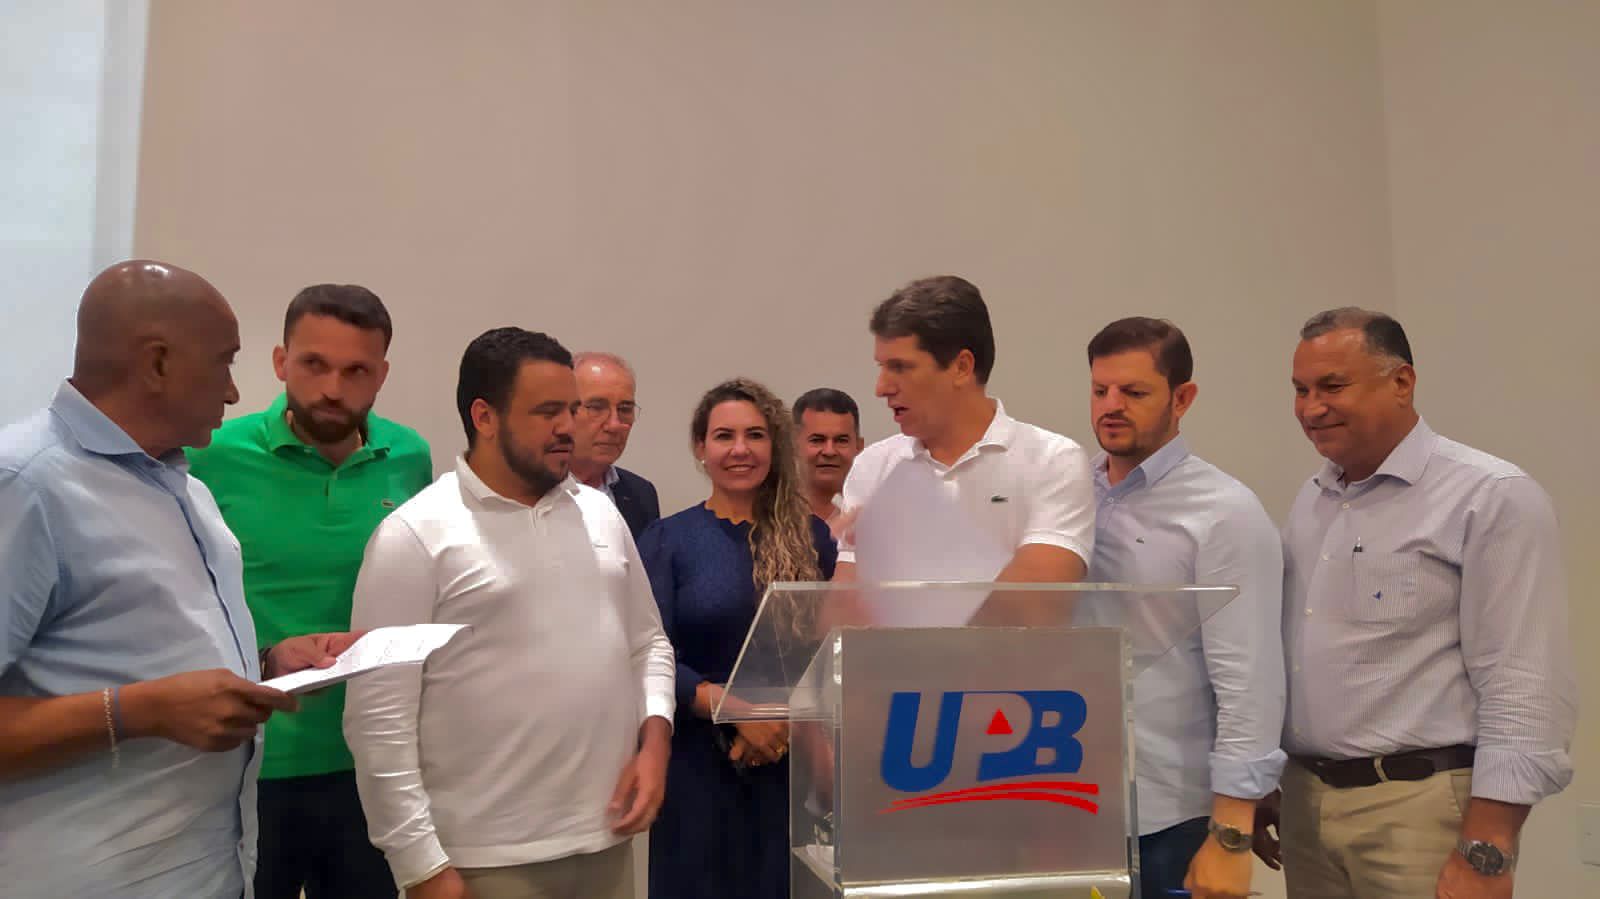 Córdélia Torres representa Eunápolis em reunião de prefeitos na UPB para discutir melhorias na educação 6